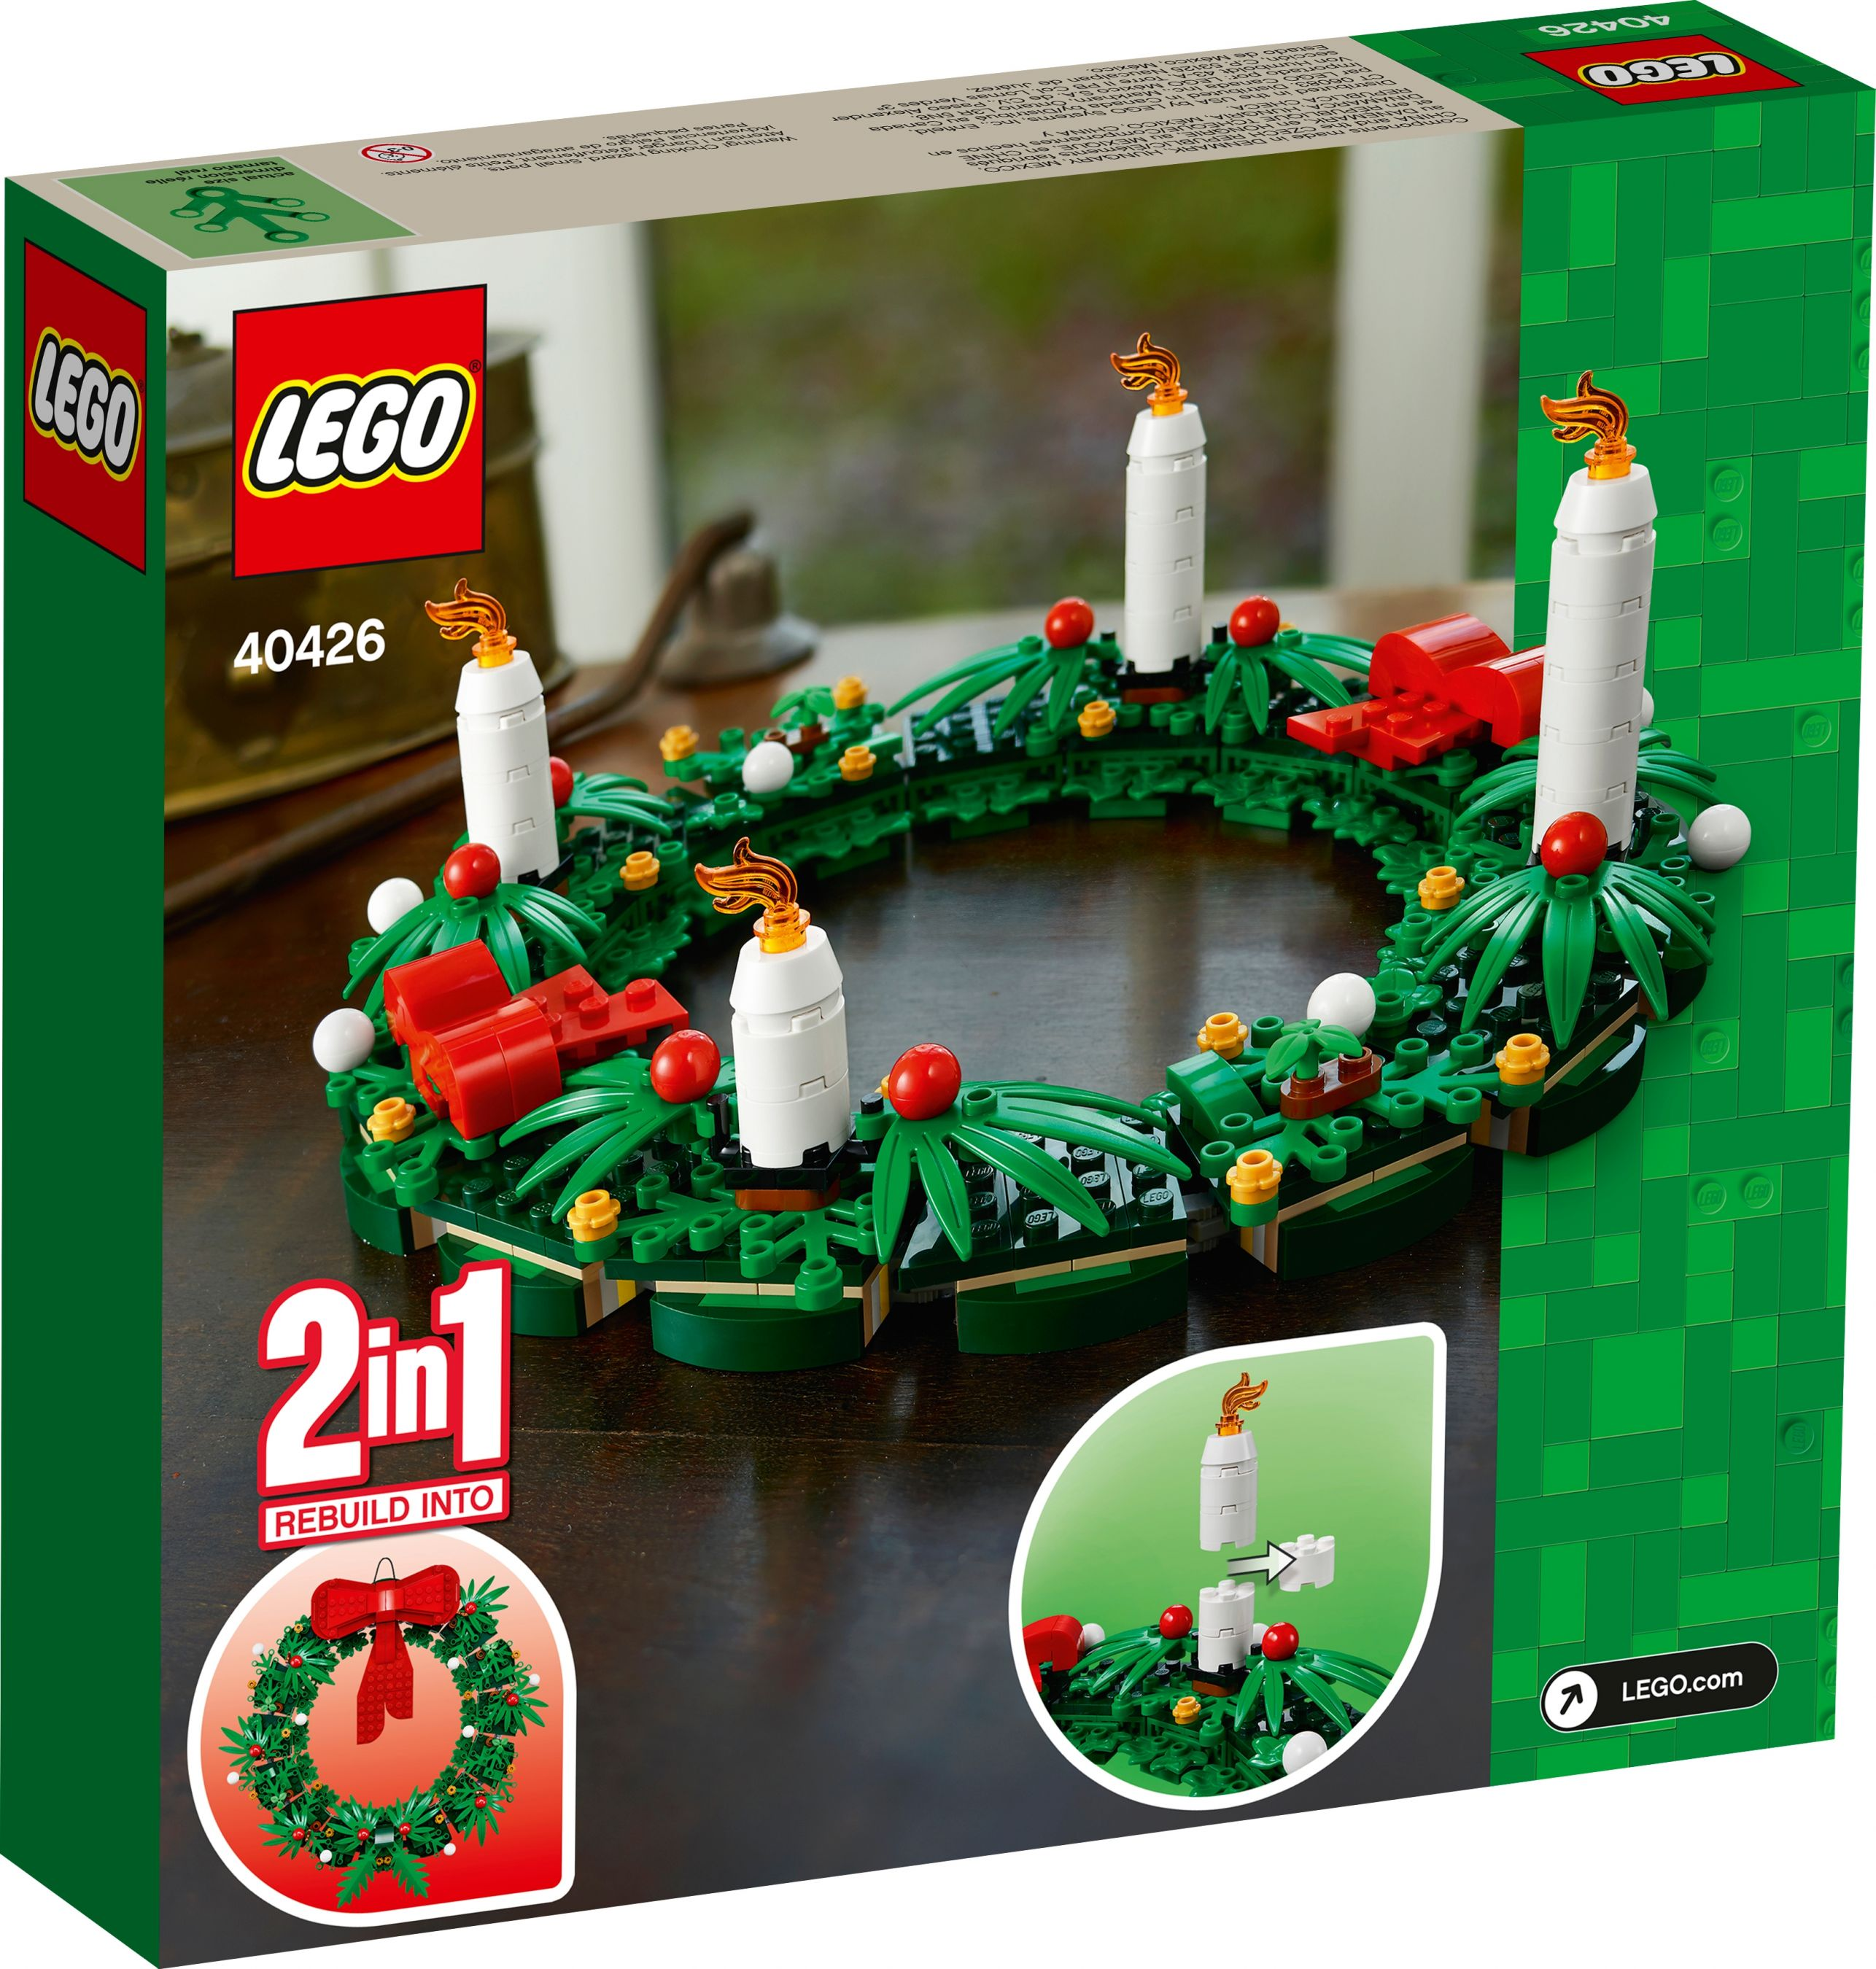 LEGO 40426 Türkranz / Bausatz Adventskranz 2in1